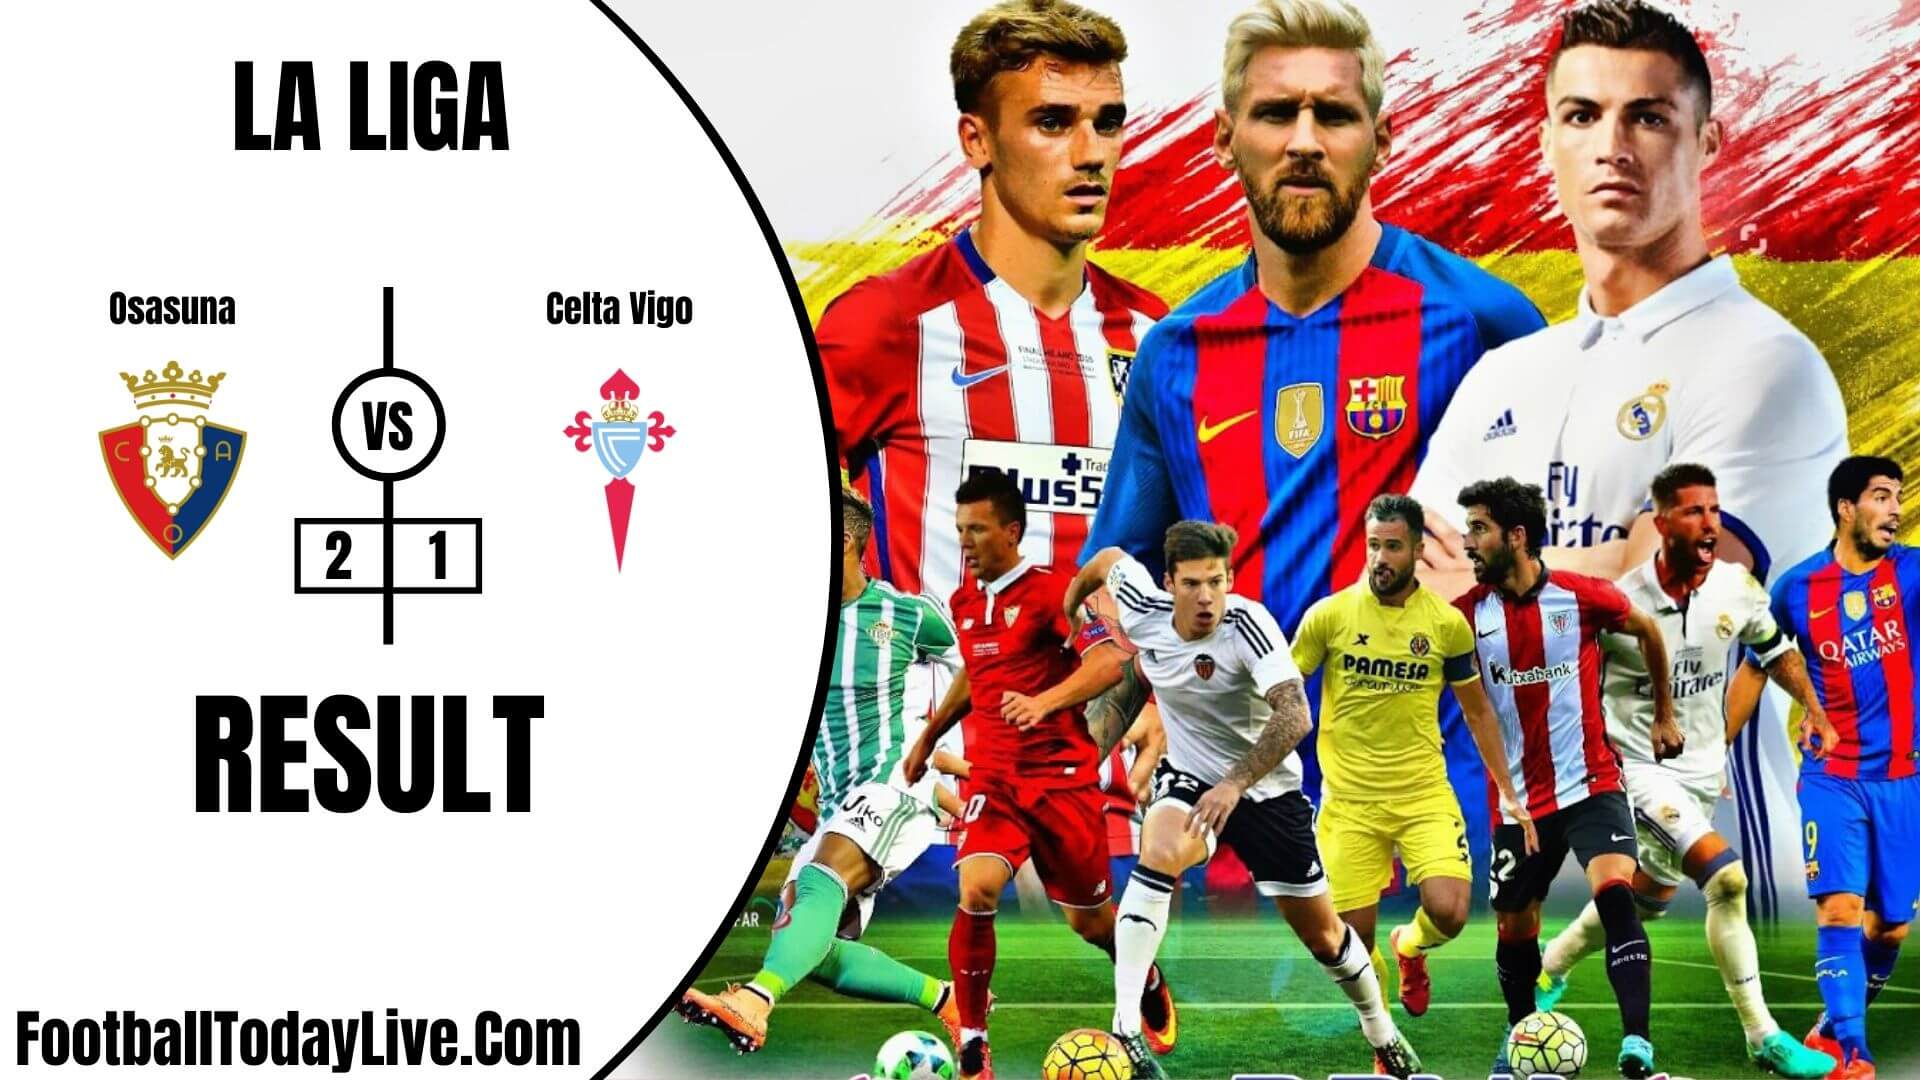 Osasuna Vs Celta Vigo | La Liga Week 36 Result 2020